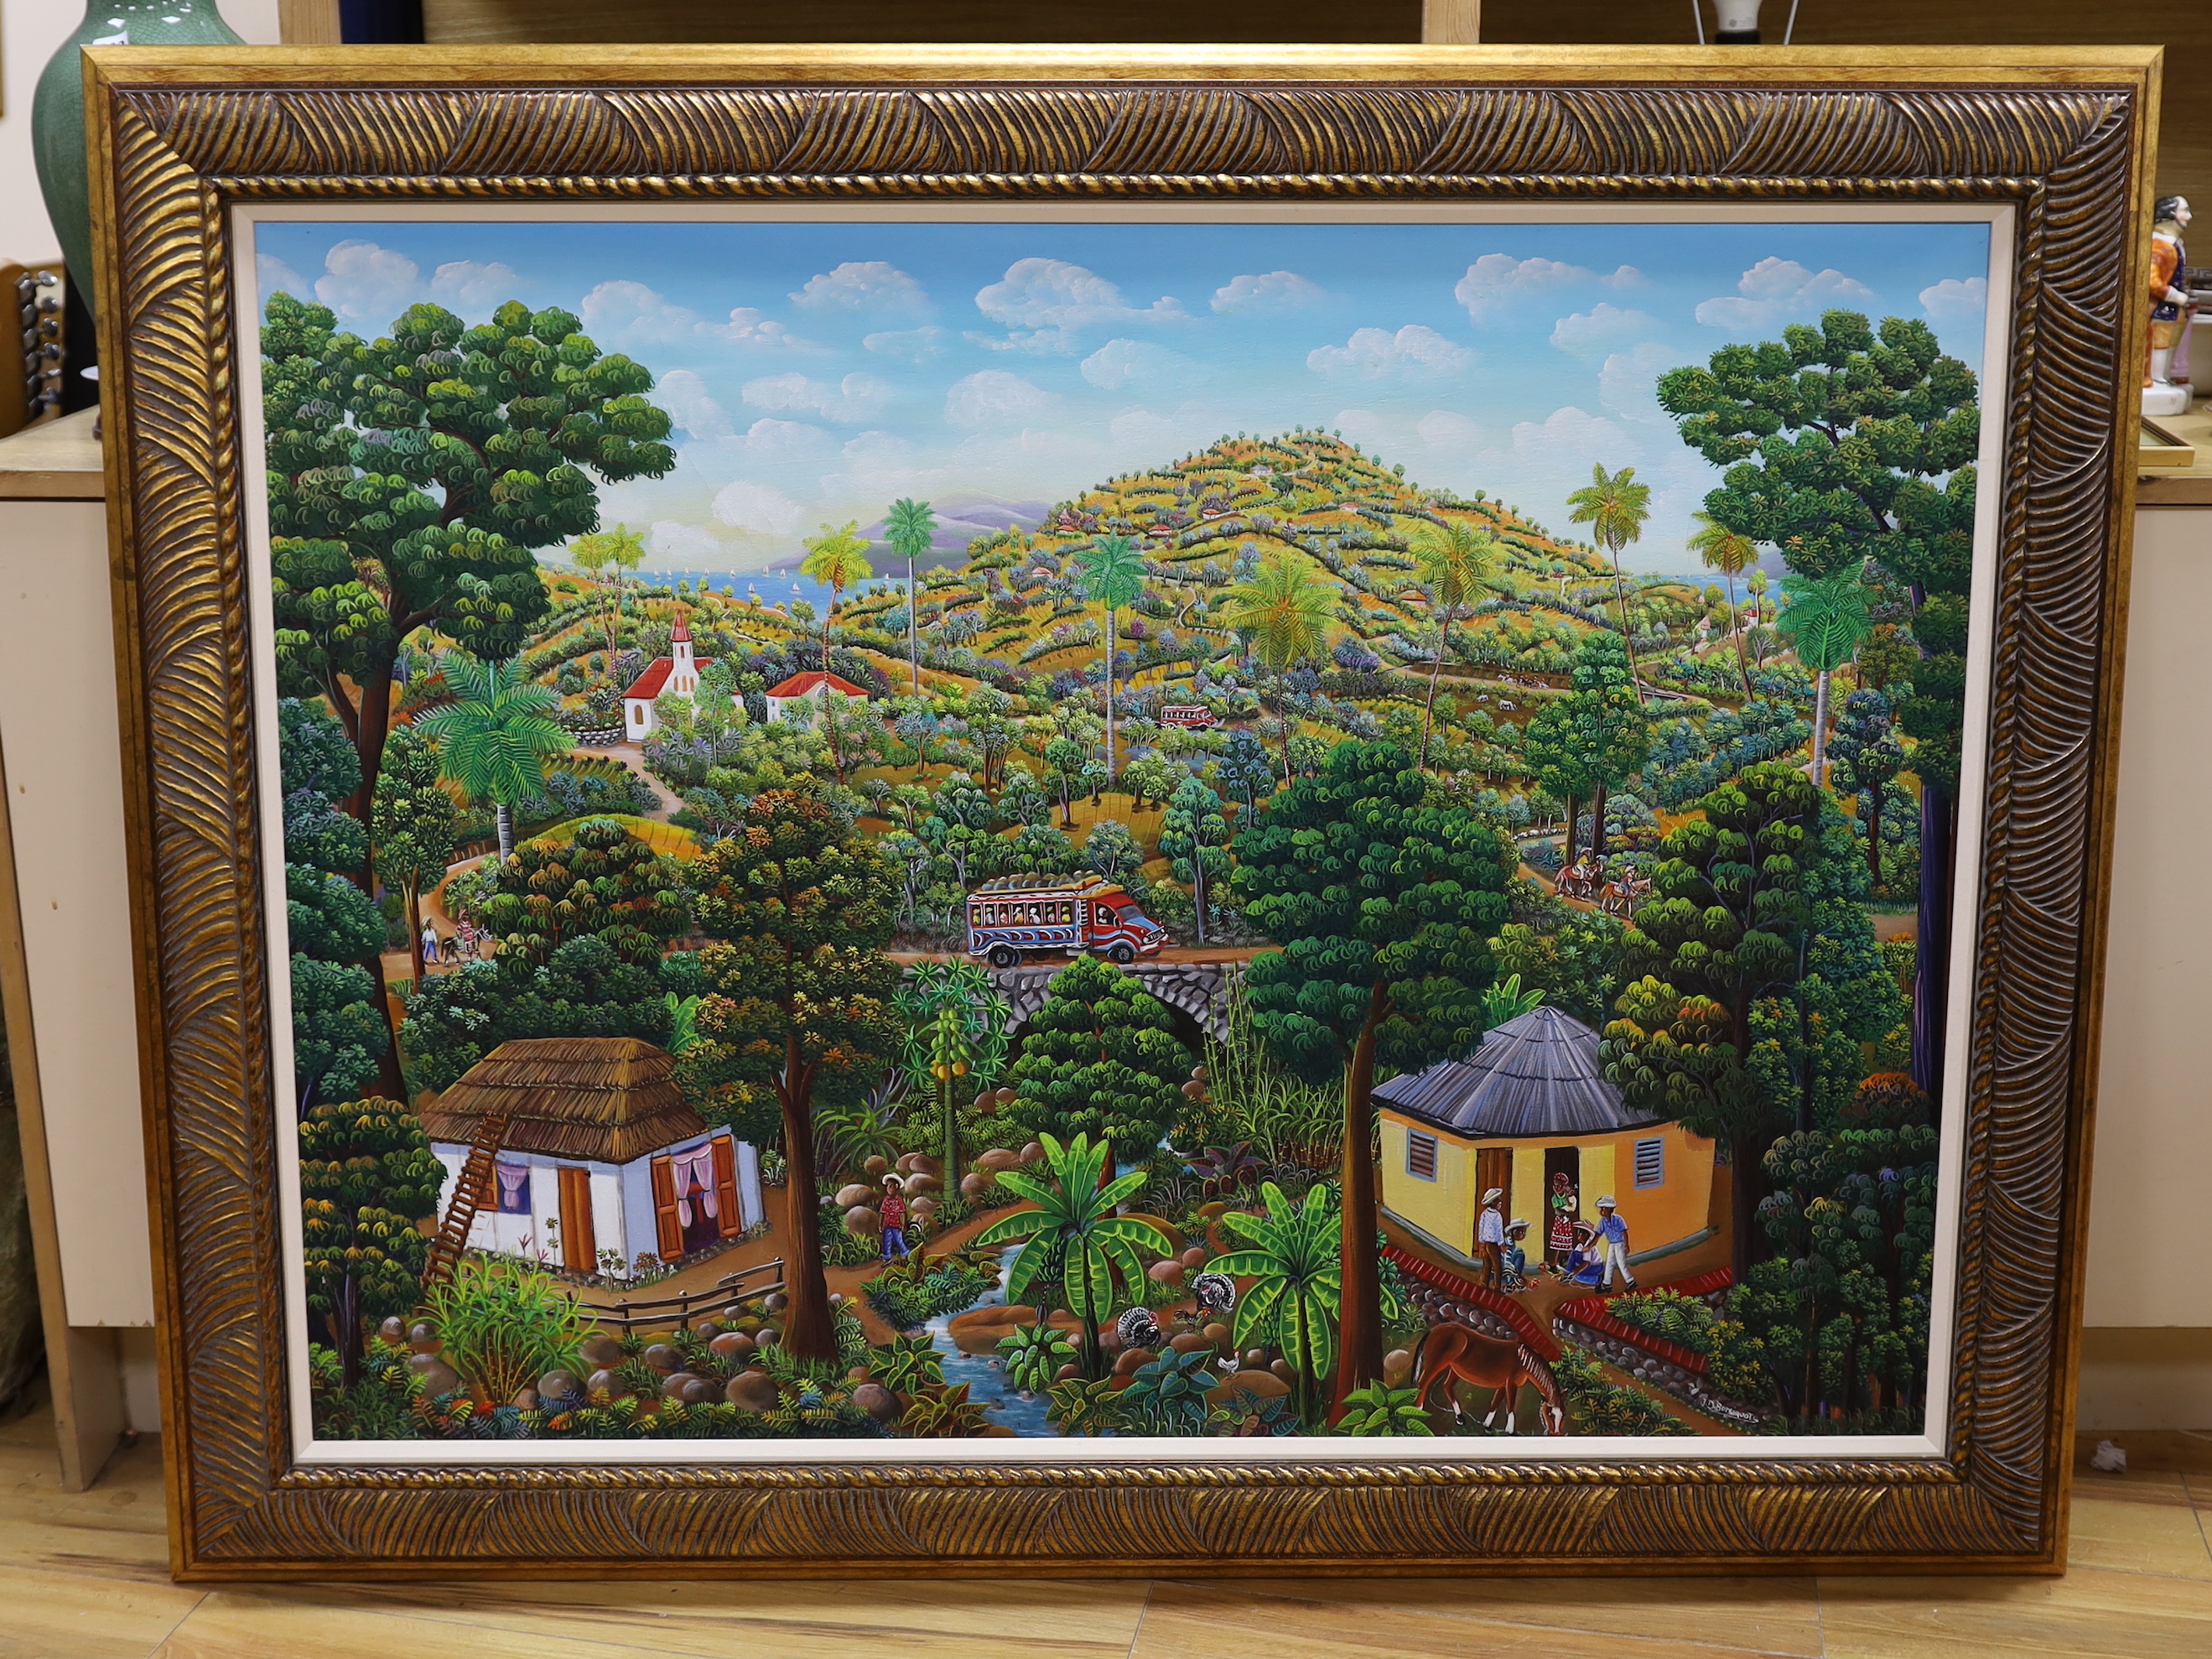 Jean David Boursiquot (Haitian 1949-), oil on canvas, 'Bus on a Bridge', 117 x 91.5cm